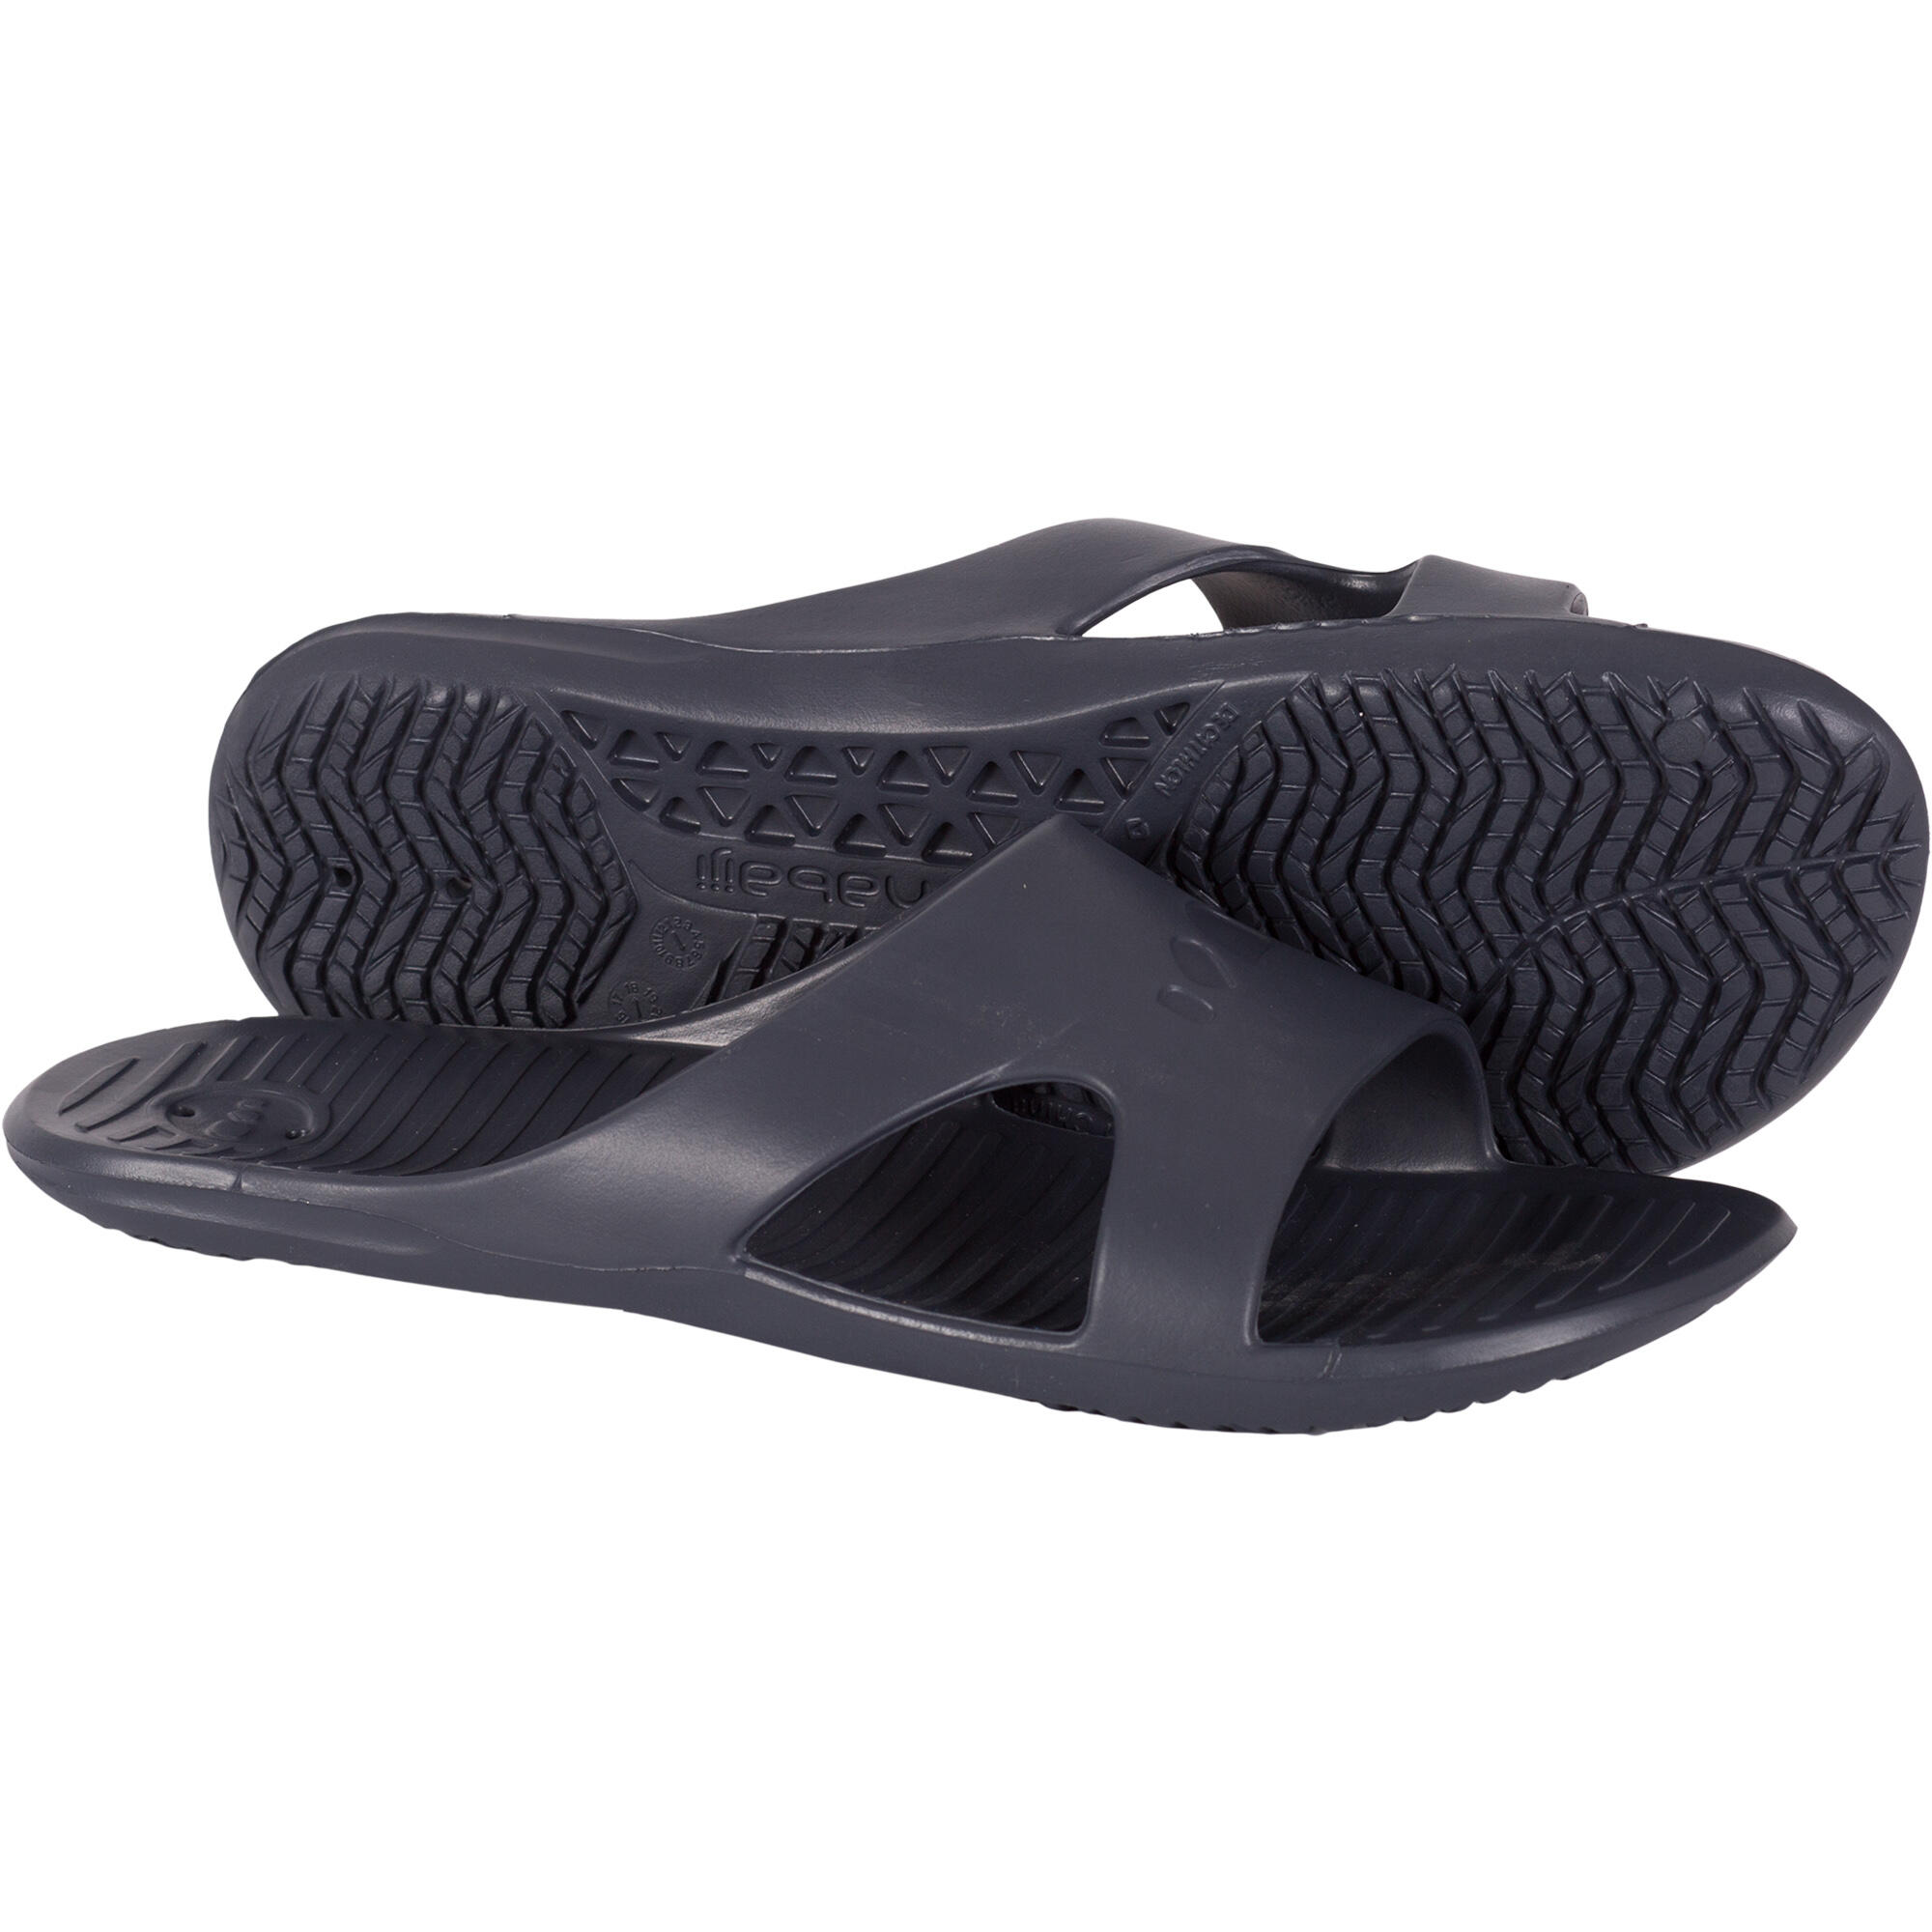 Men's Pool Sandals Slap 100 - Basic 